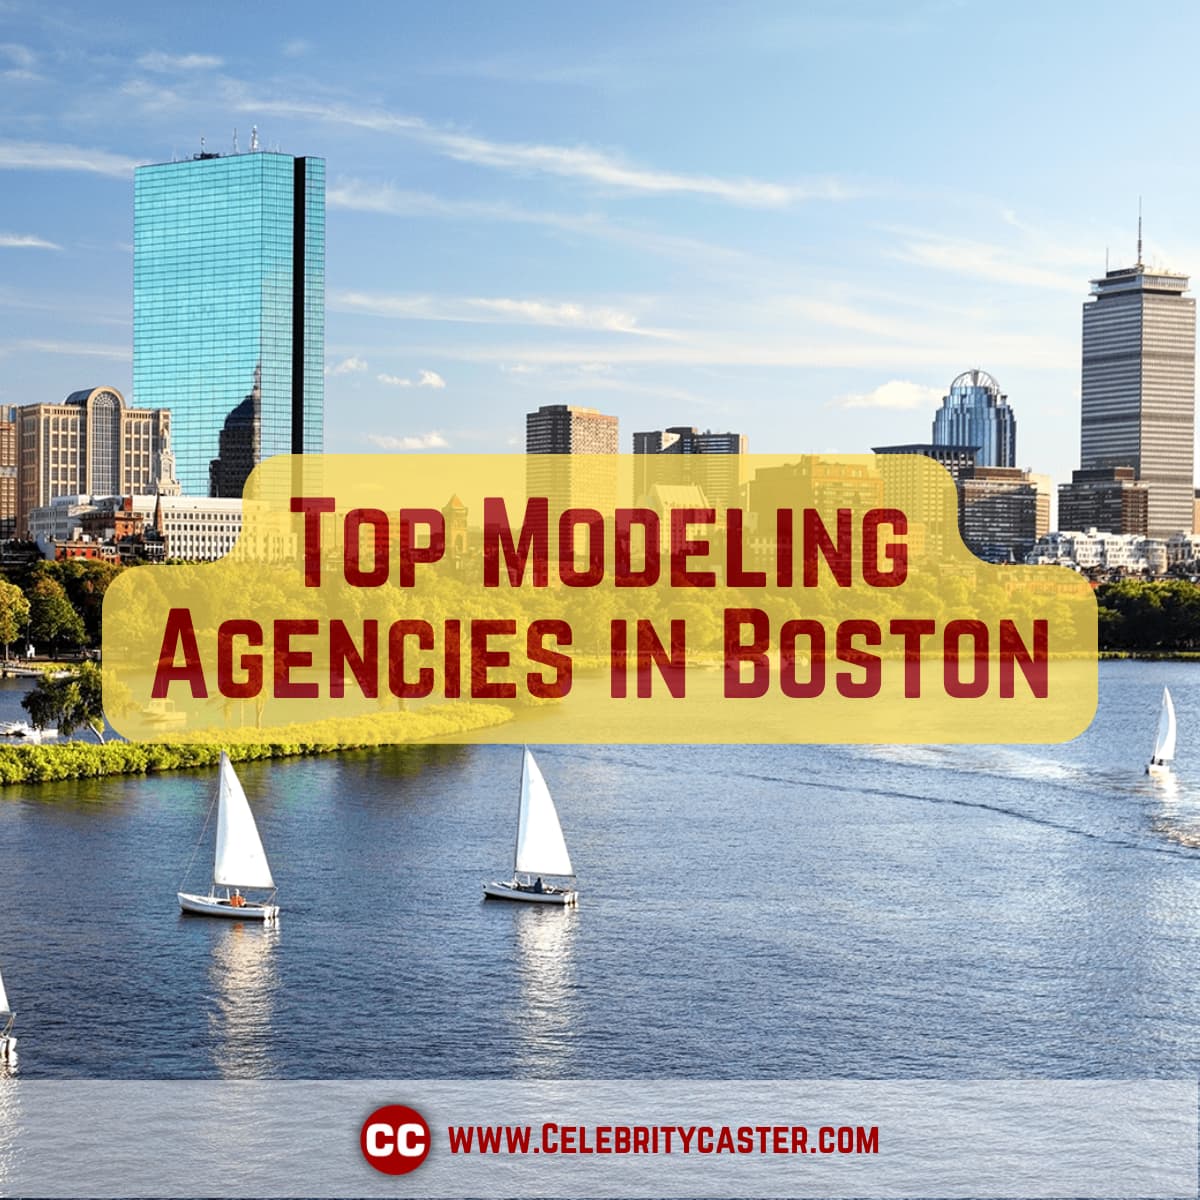 List of Top Modeling Agencies in Boston